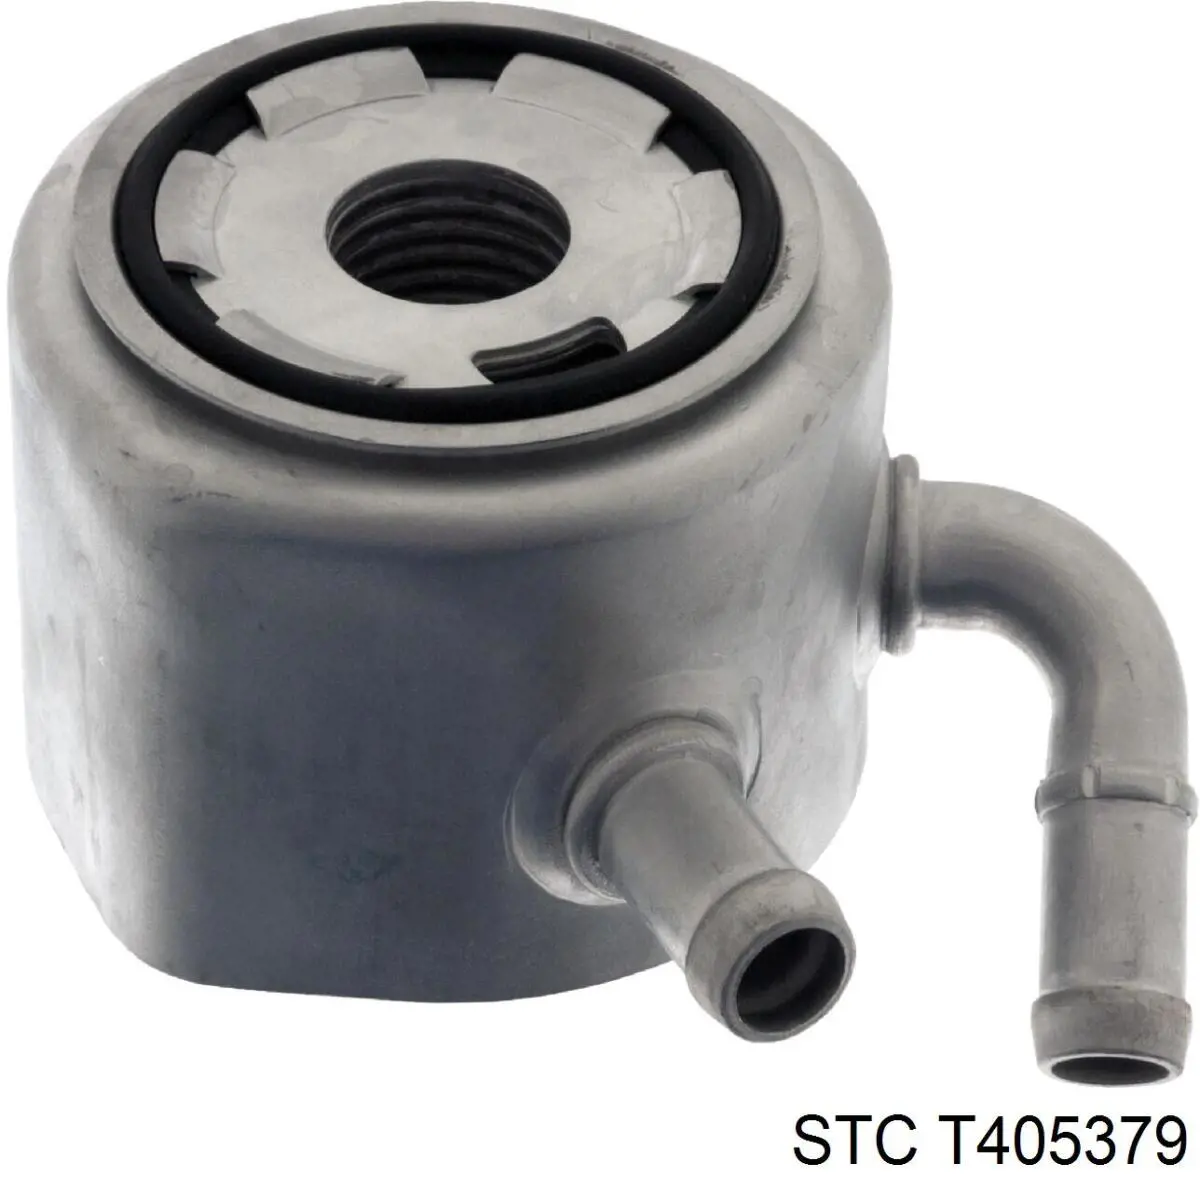 T405379 STC радиатор масляный (холодильник, под фильтром)